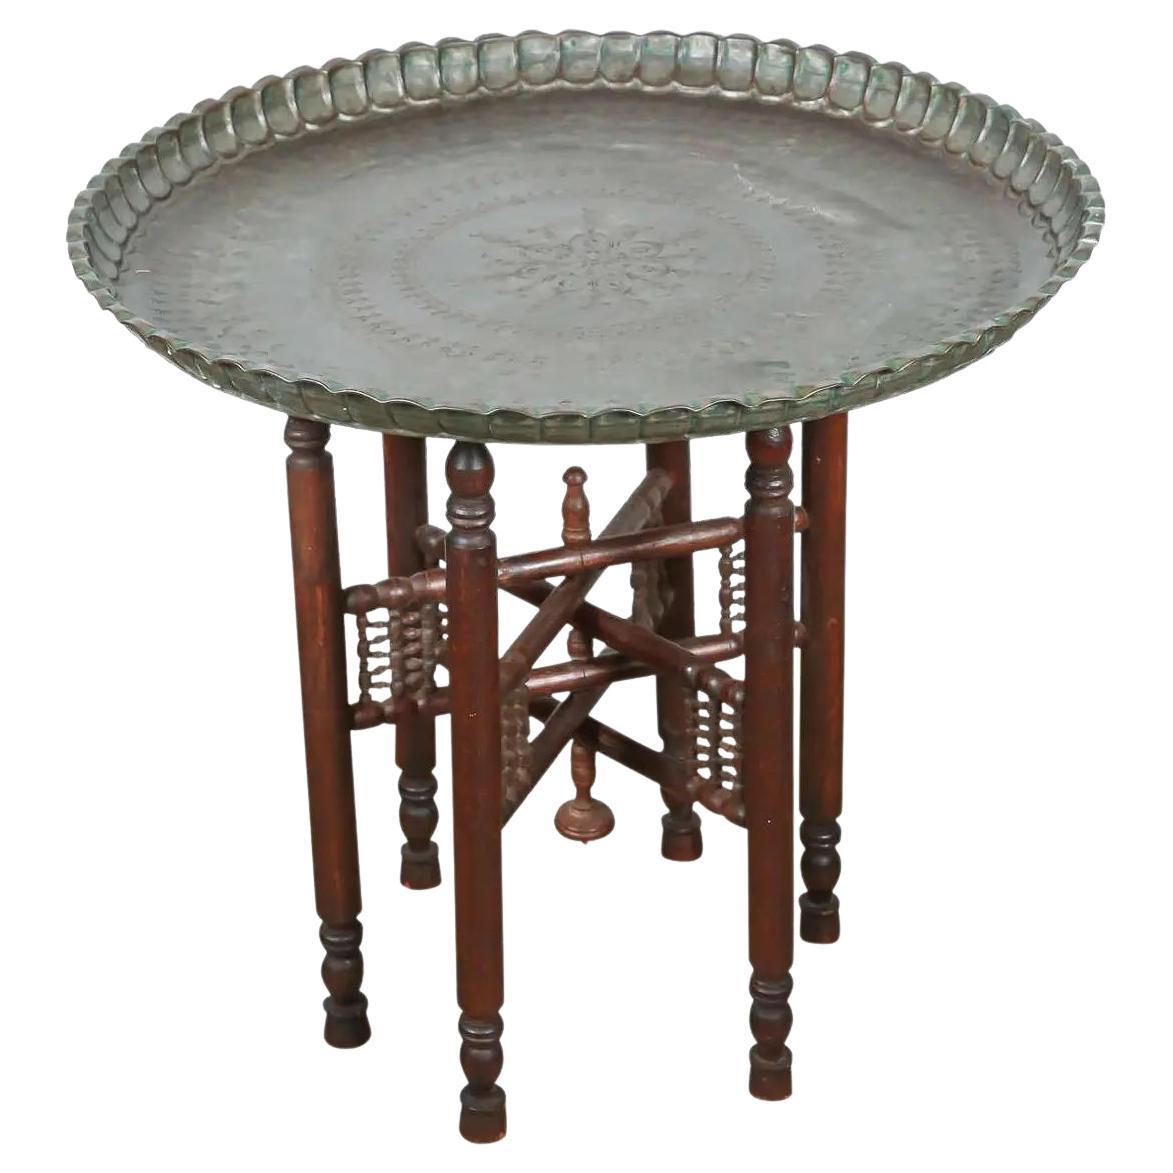 Türkischer Zinn-Kupfer-Tabletttisch auf Holzständer mit Klappdeckel